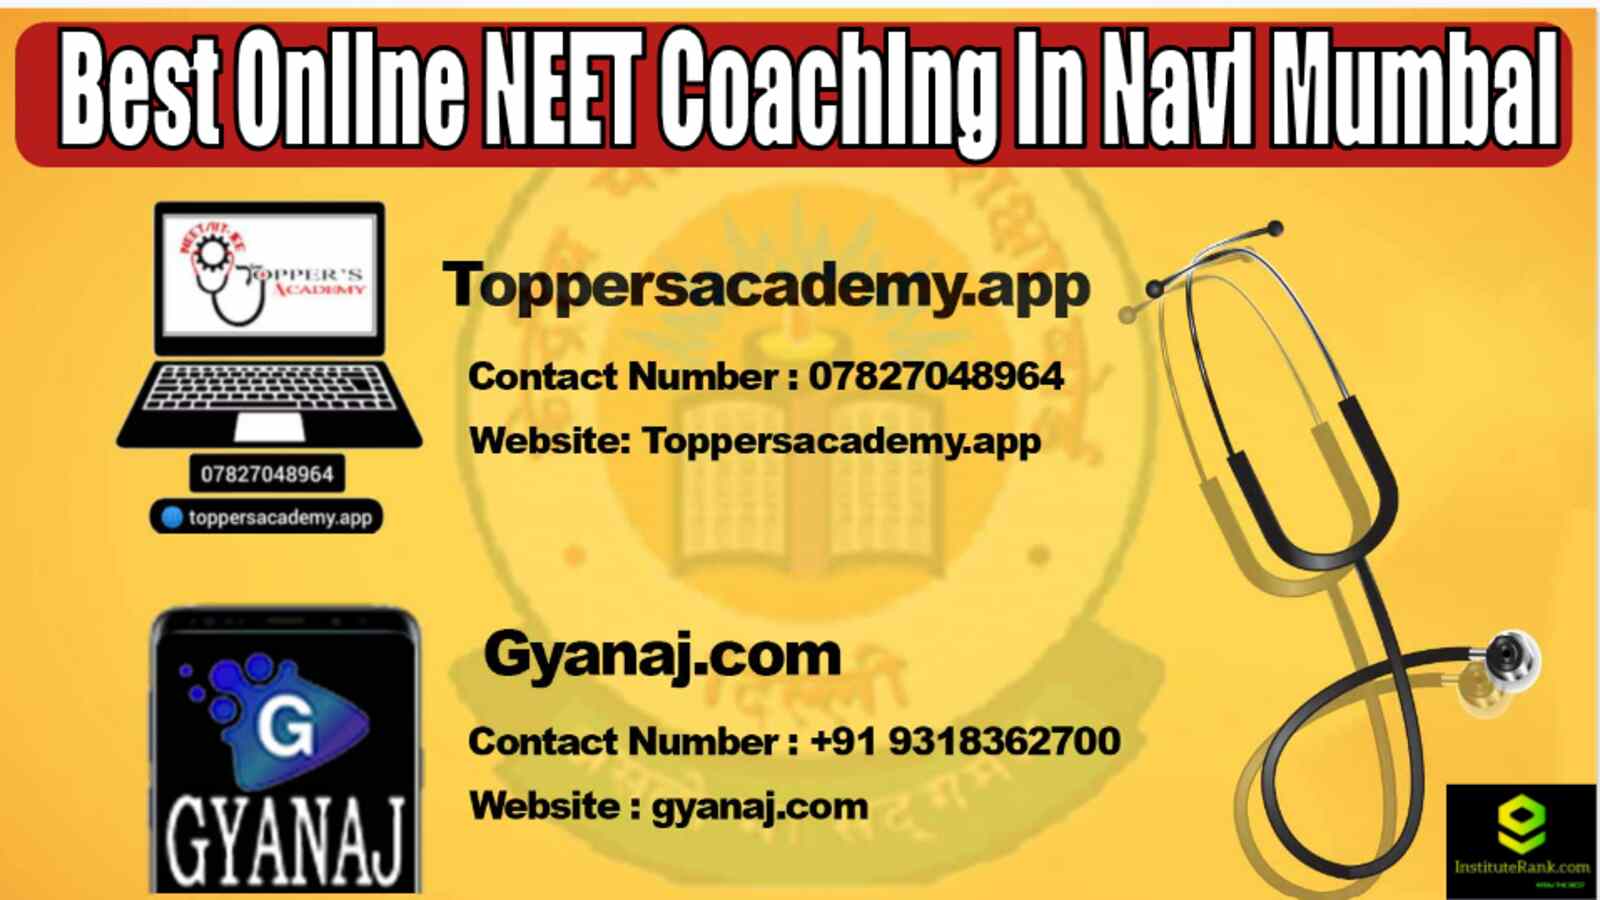 Best Online NEET Coaching in Navi Mumbai 2022